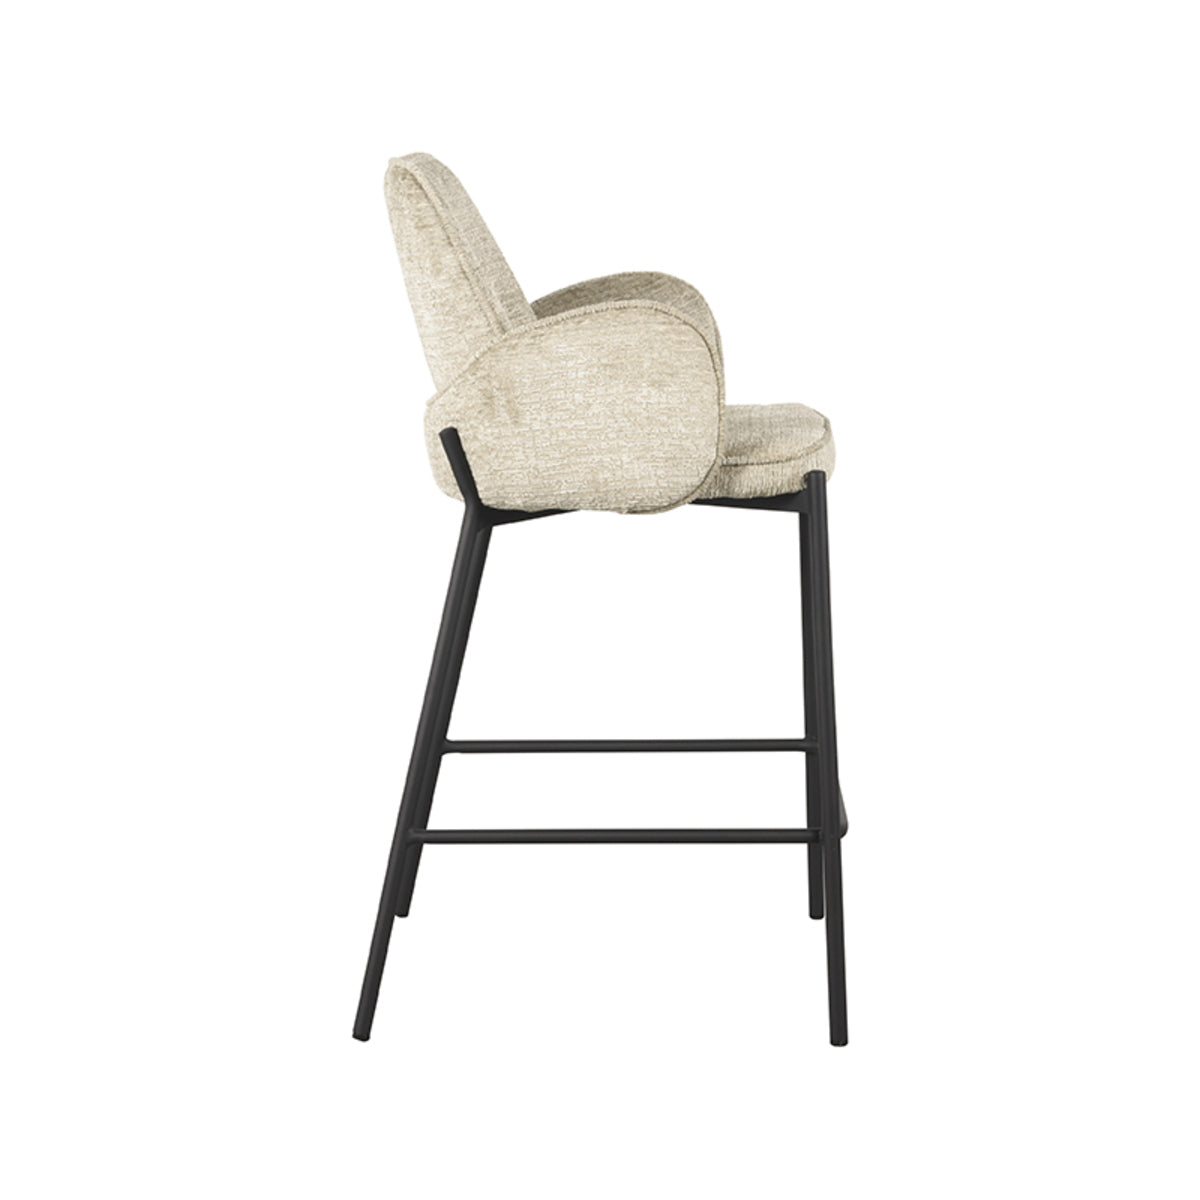 LABEL51 Bar stool Joni - Beige - Velvet - Seat height 65 cm |